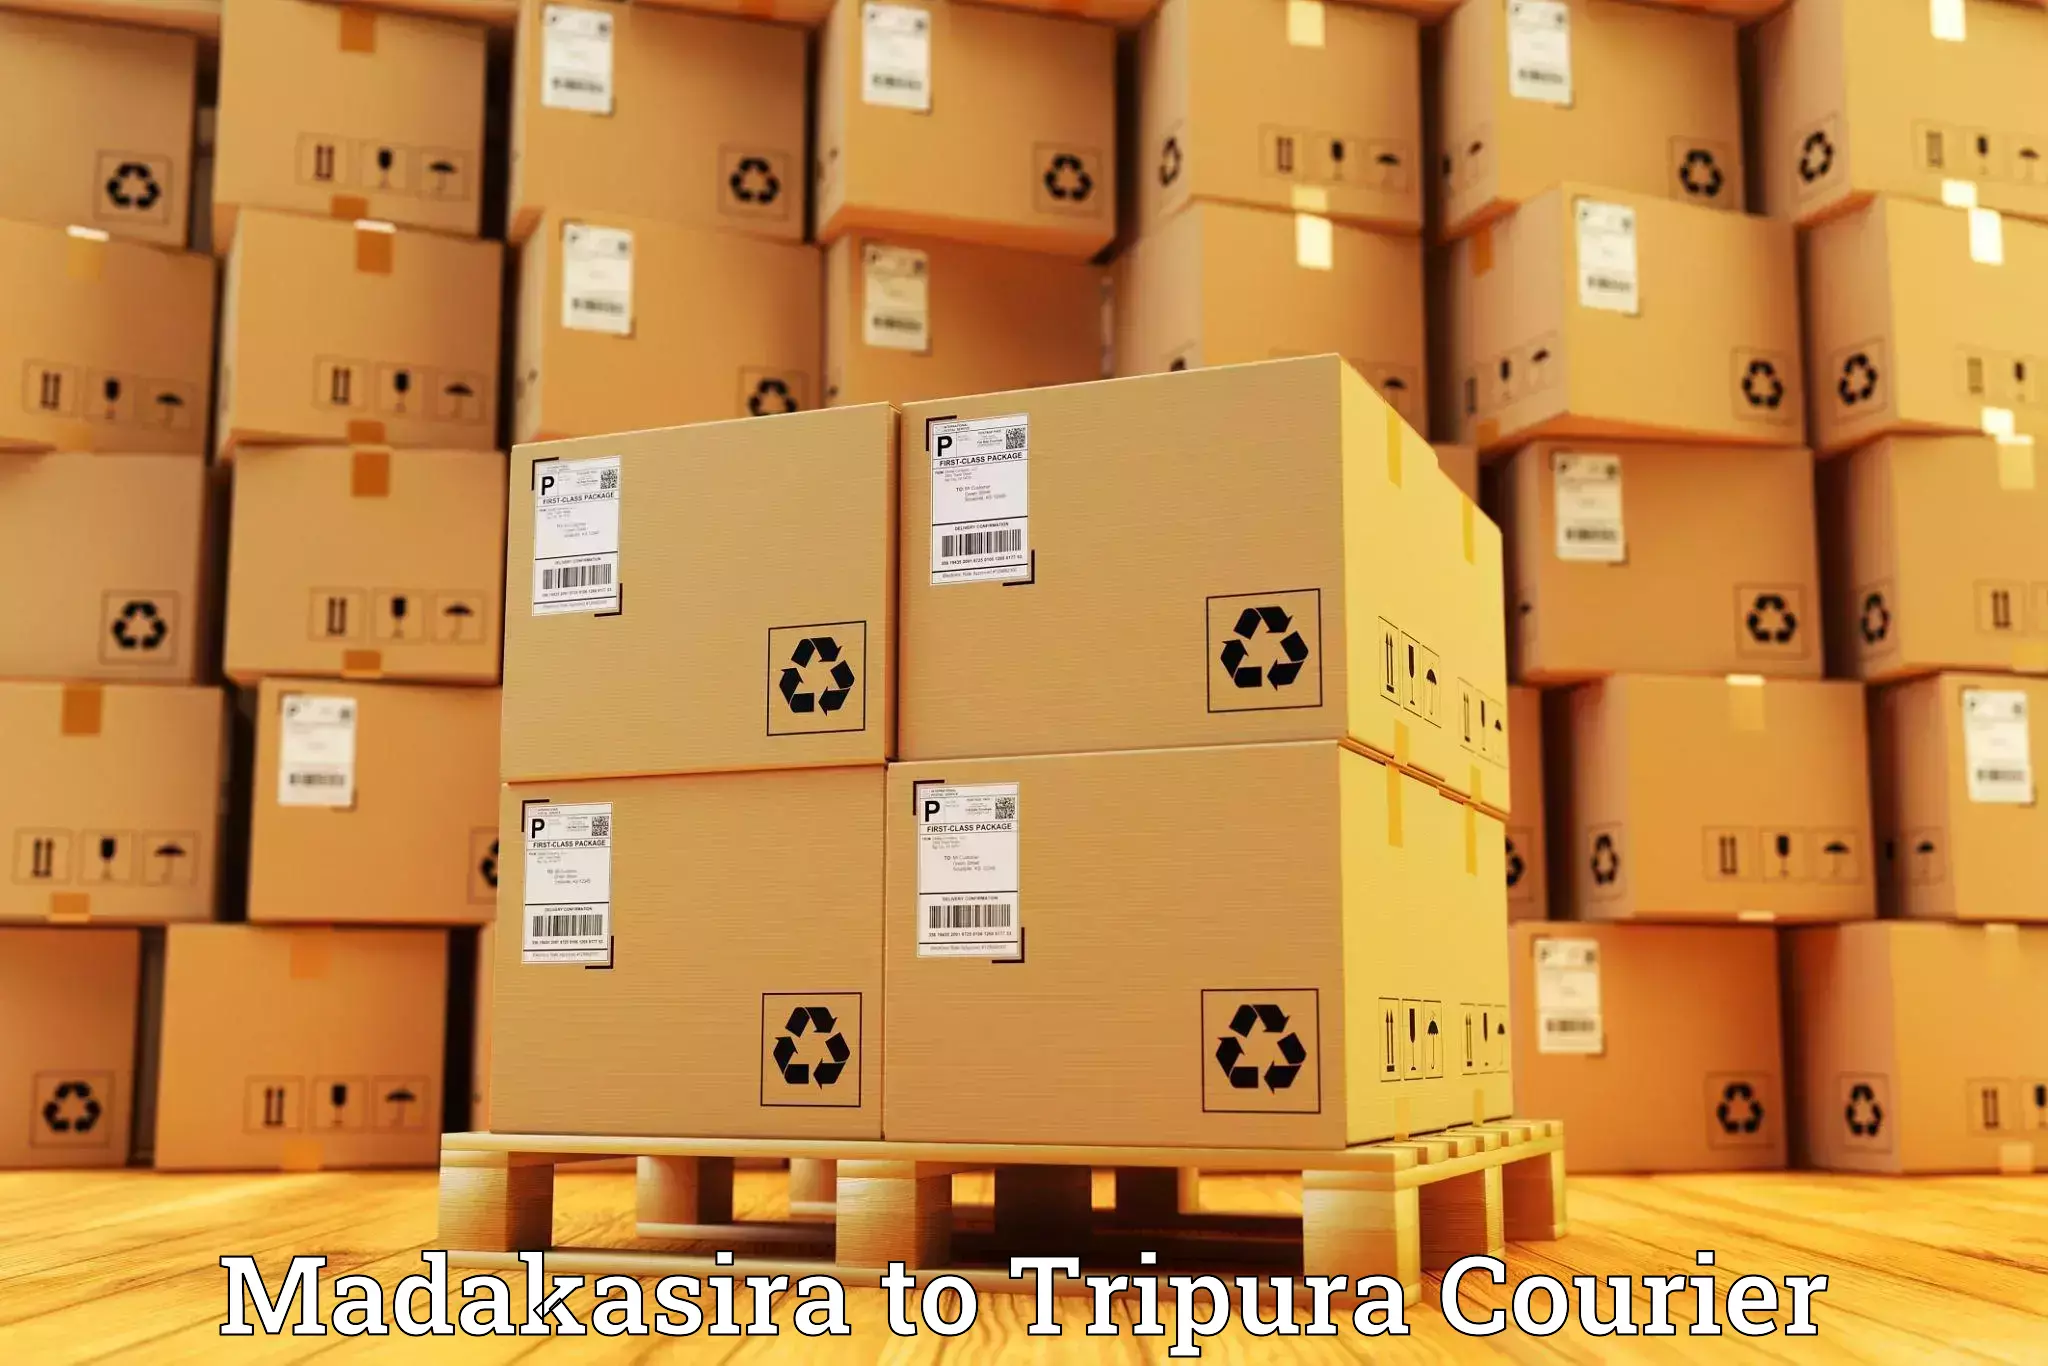 24/7 shipping services Madakasira to IIIT Agartala